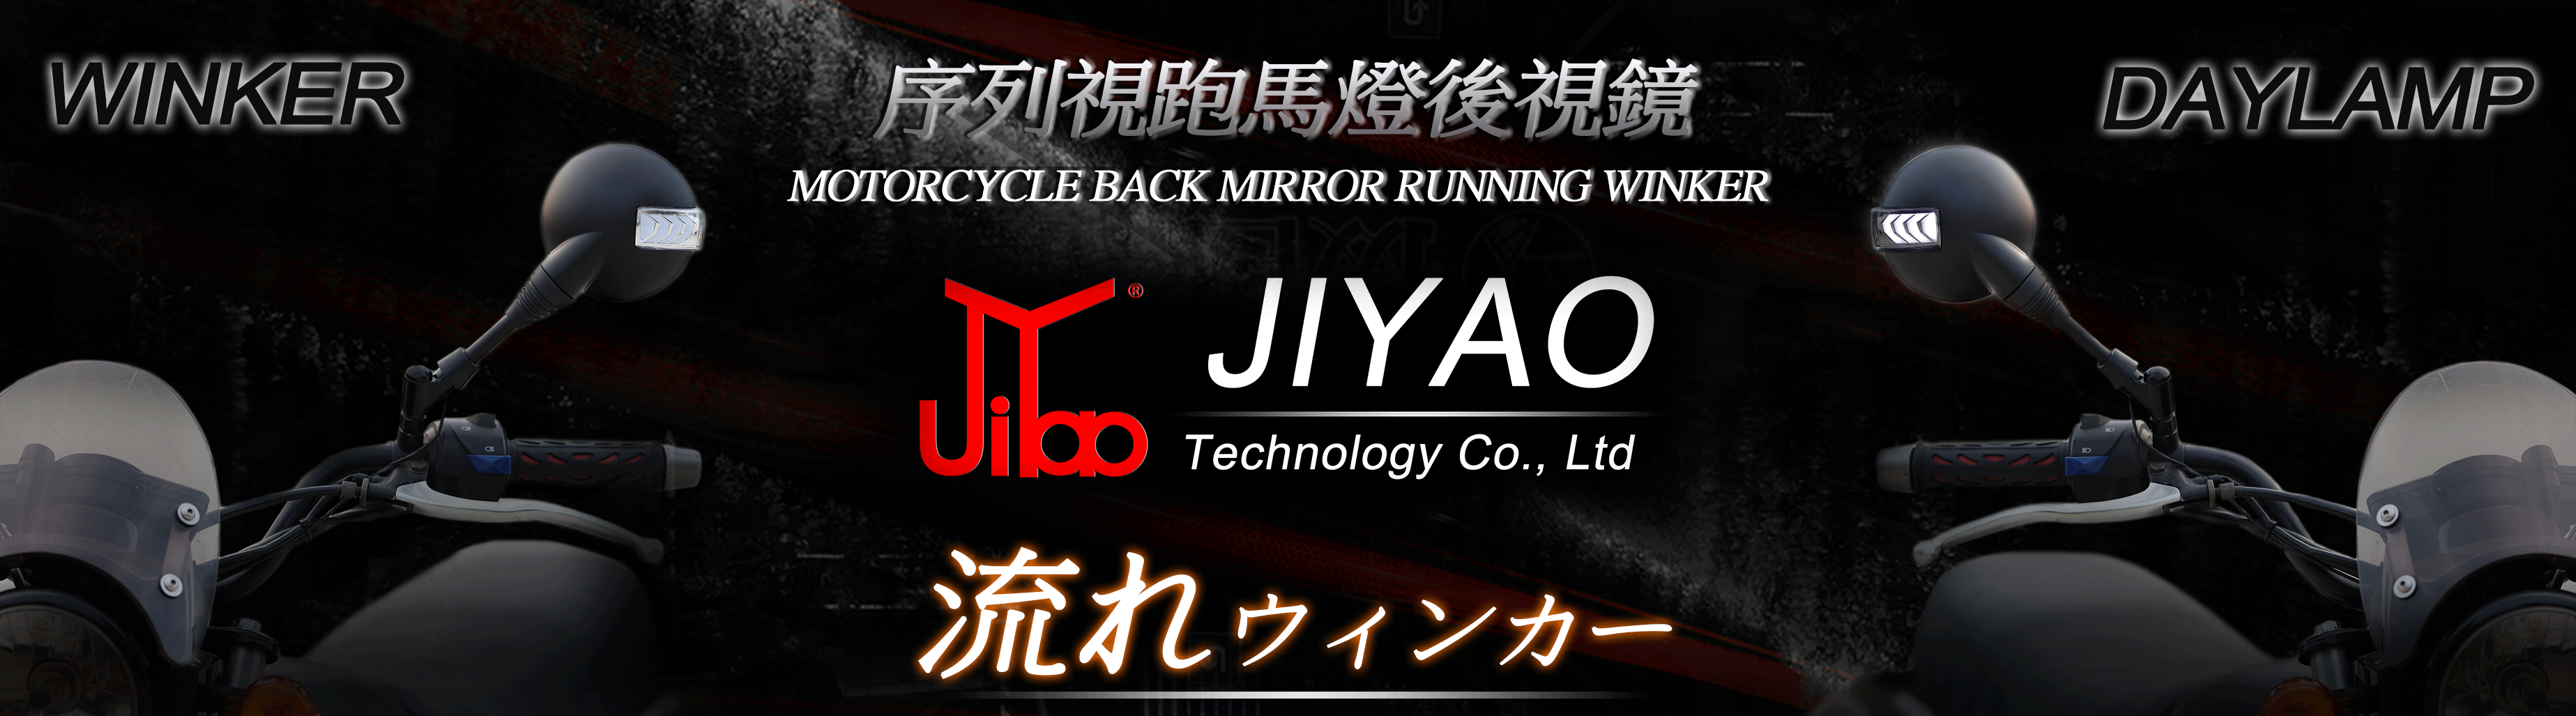 JY002-M 序列式跑馬燈後照鏡